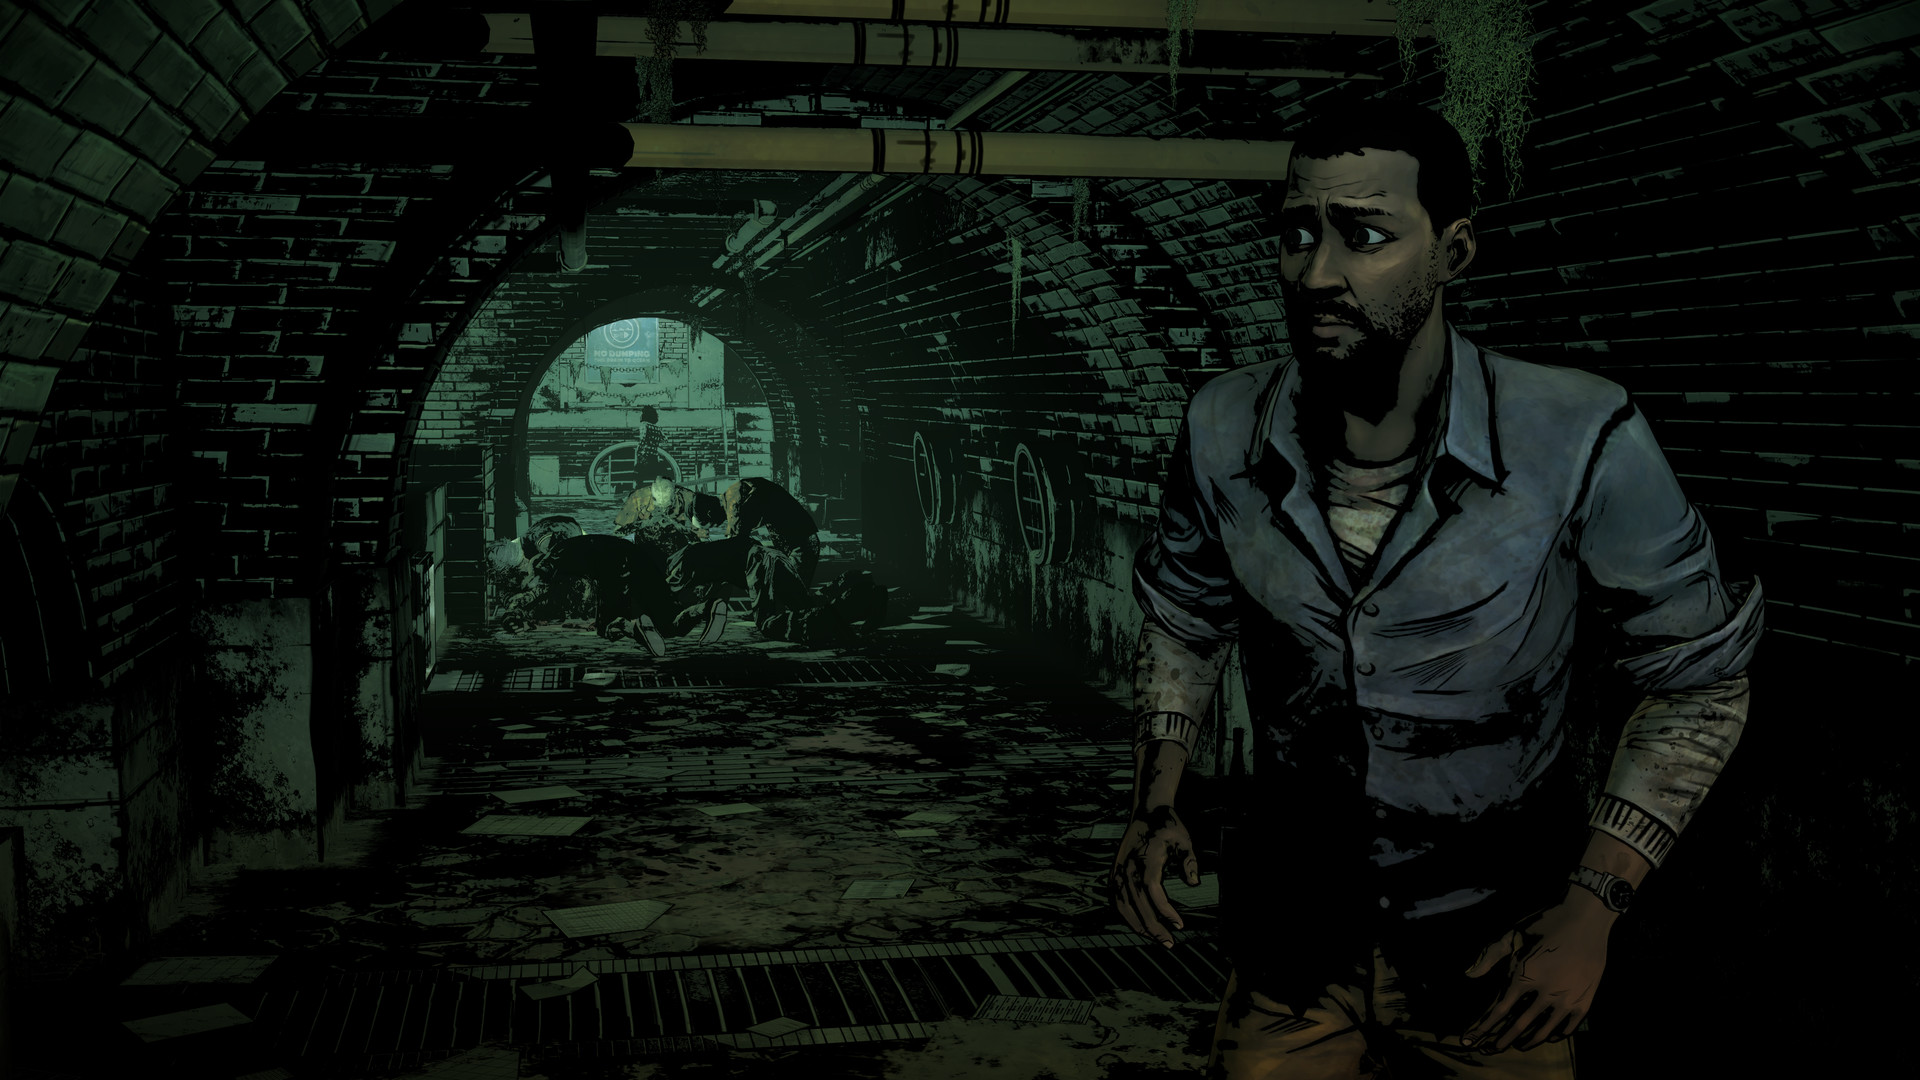 Lee looks back in fear as he walks down a darkened sewer tunnel